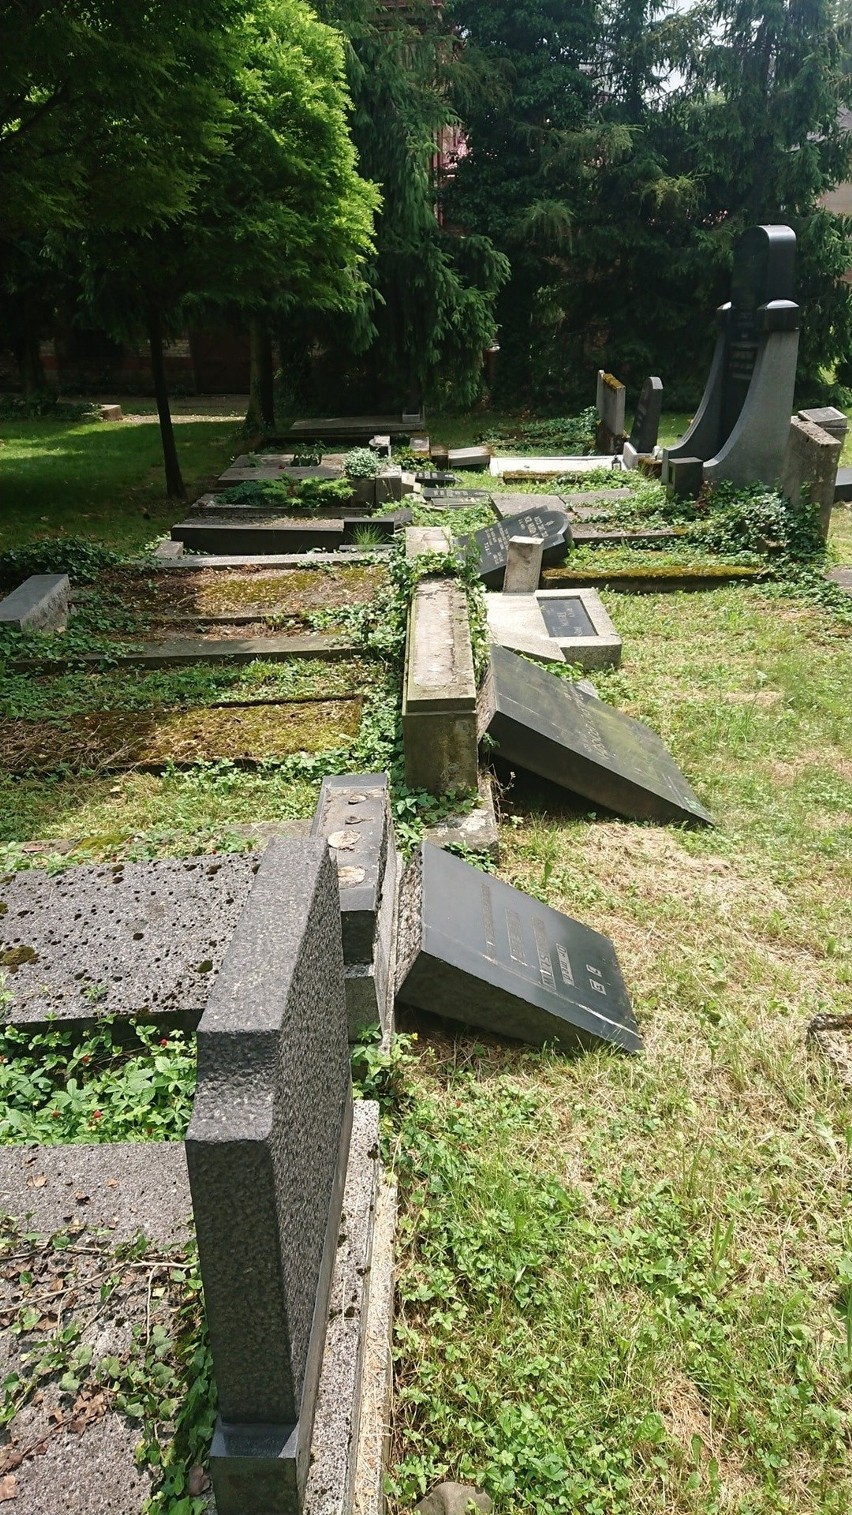 Cmentarz żydowski w Bielsku-Białej zniszczony przez wandali. Ruszyła zbiórka na odnowienie nagrobków